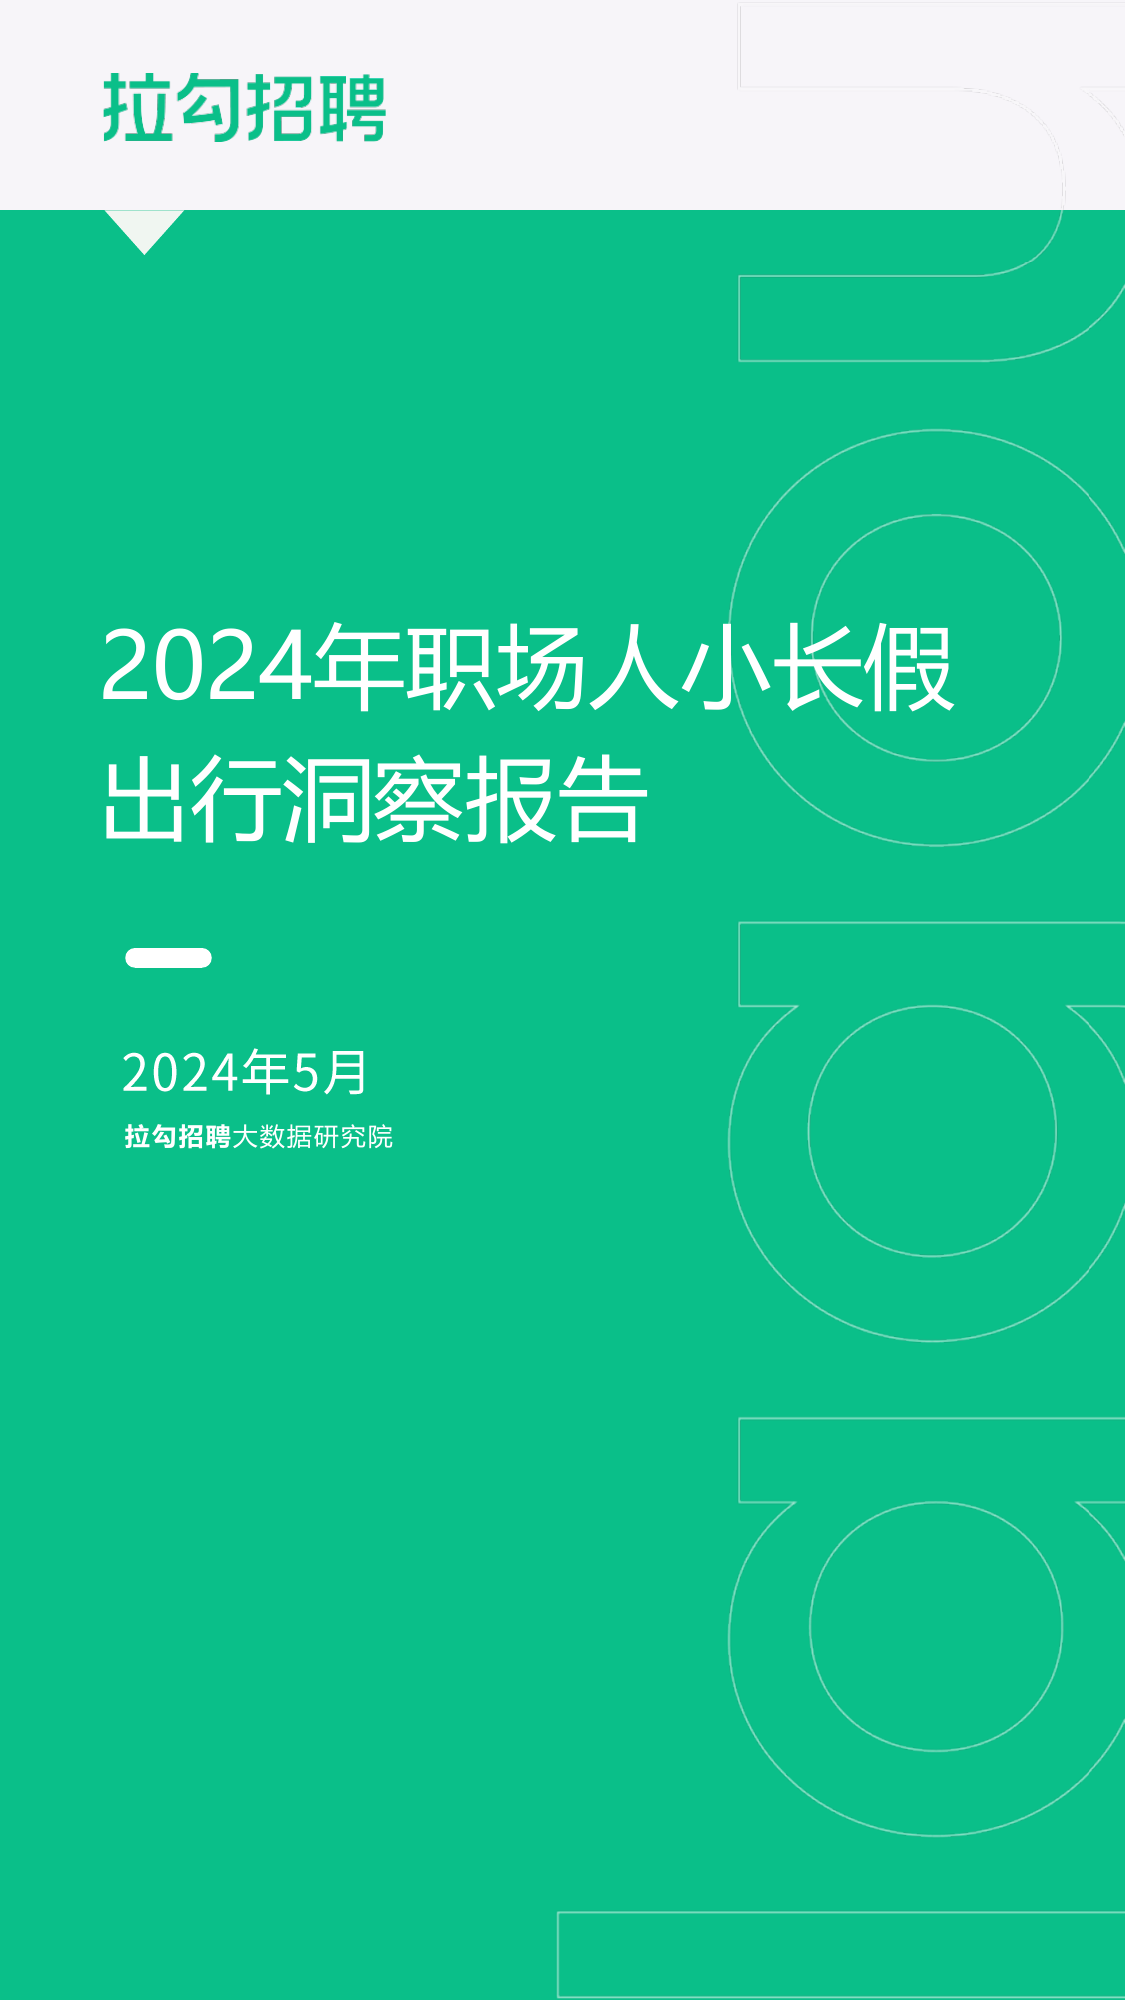 2024年职场人小长假出行洞察报告-拉勾招聘-202405.pdf